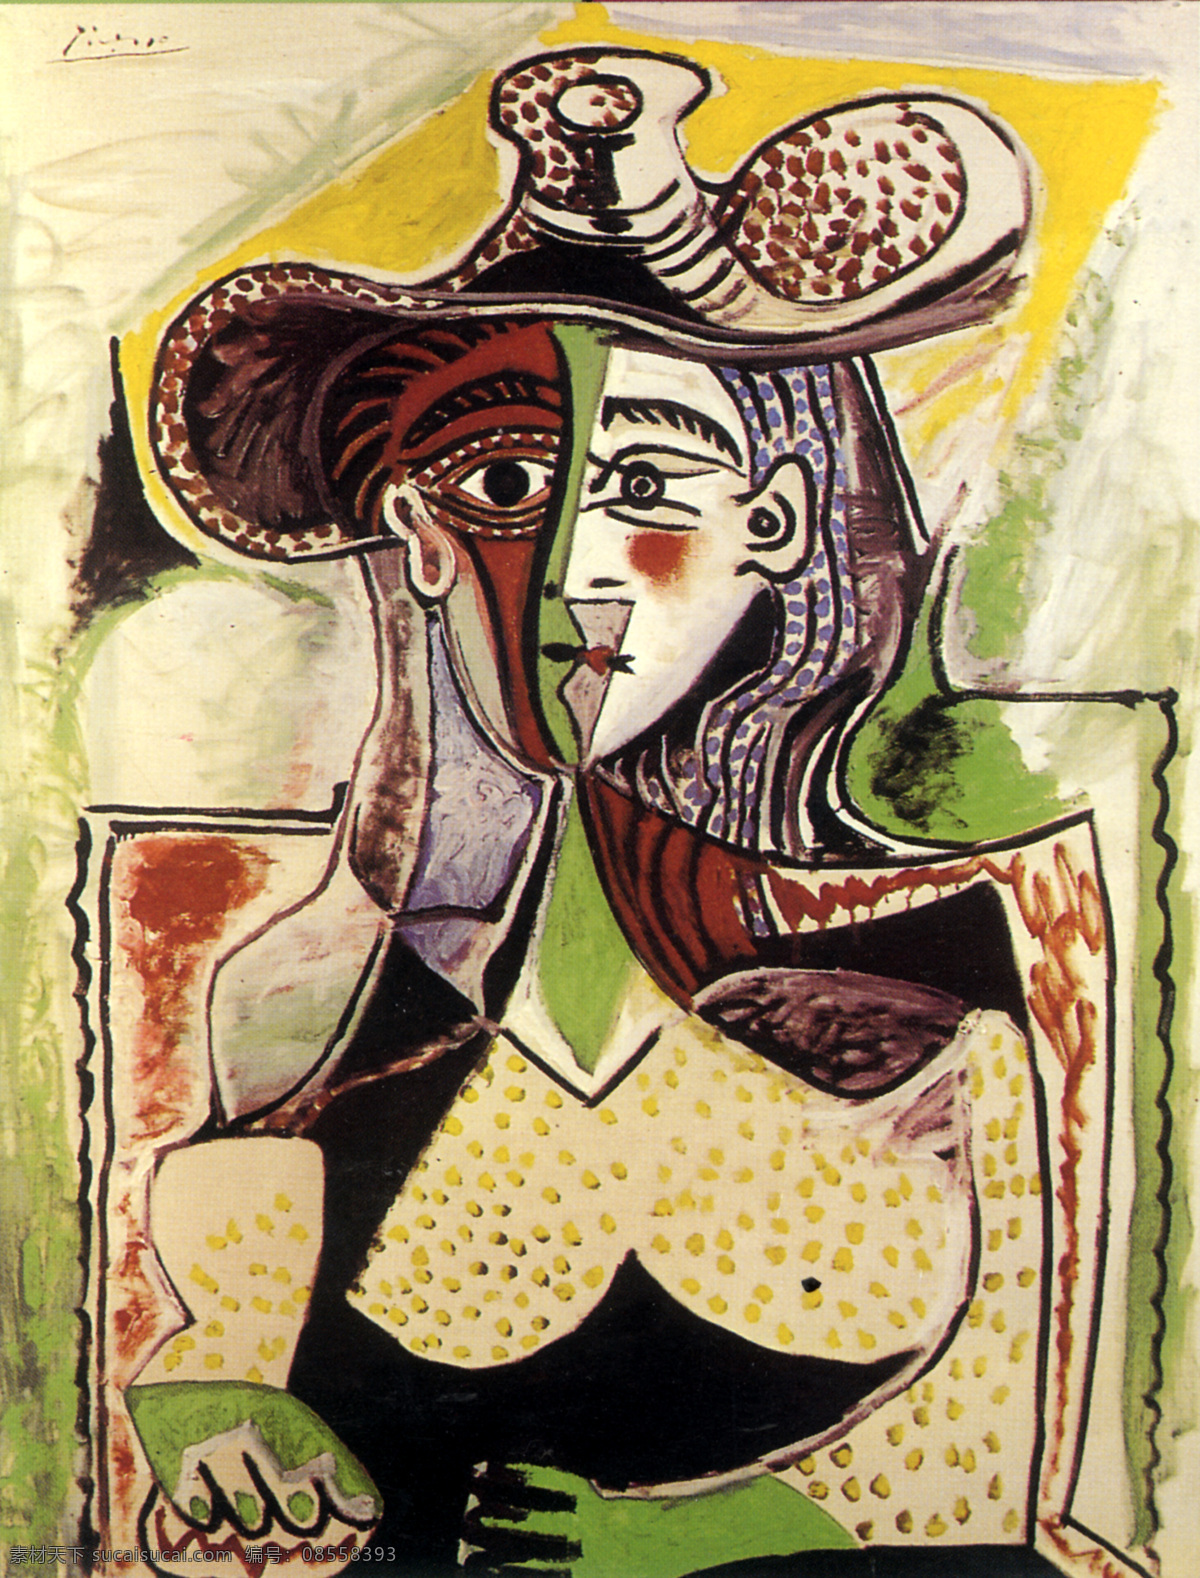 毕加索抽象画 毕加索 油画 人物 毕加索油画 绘画书法 绘画 名画 绘画艺术 女性 少女 妇女 线条轮廓 女性人体 人体 抽象油画 毕加索名画 世界名画 名画欣赏 闭合路径 矢量 文化艺术 立体派 抽象派